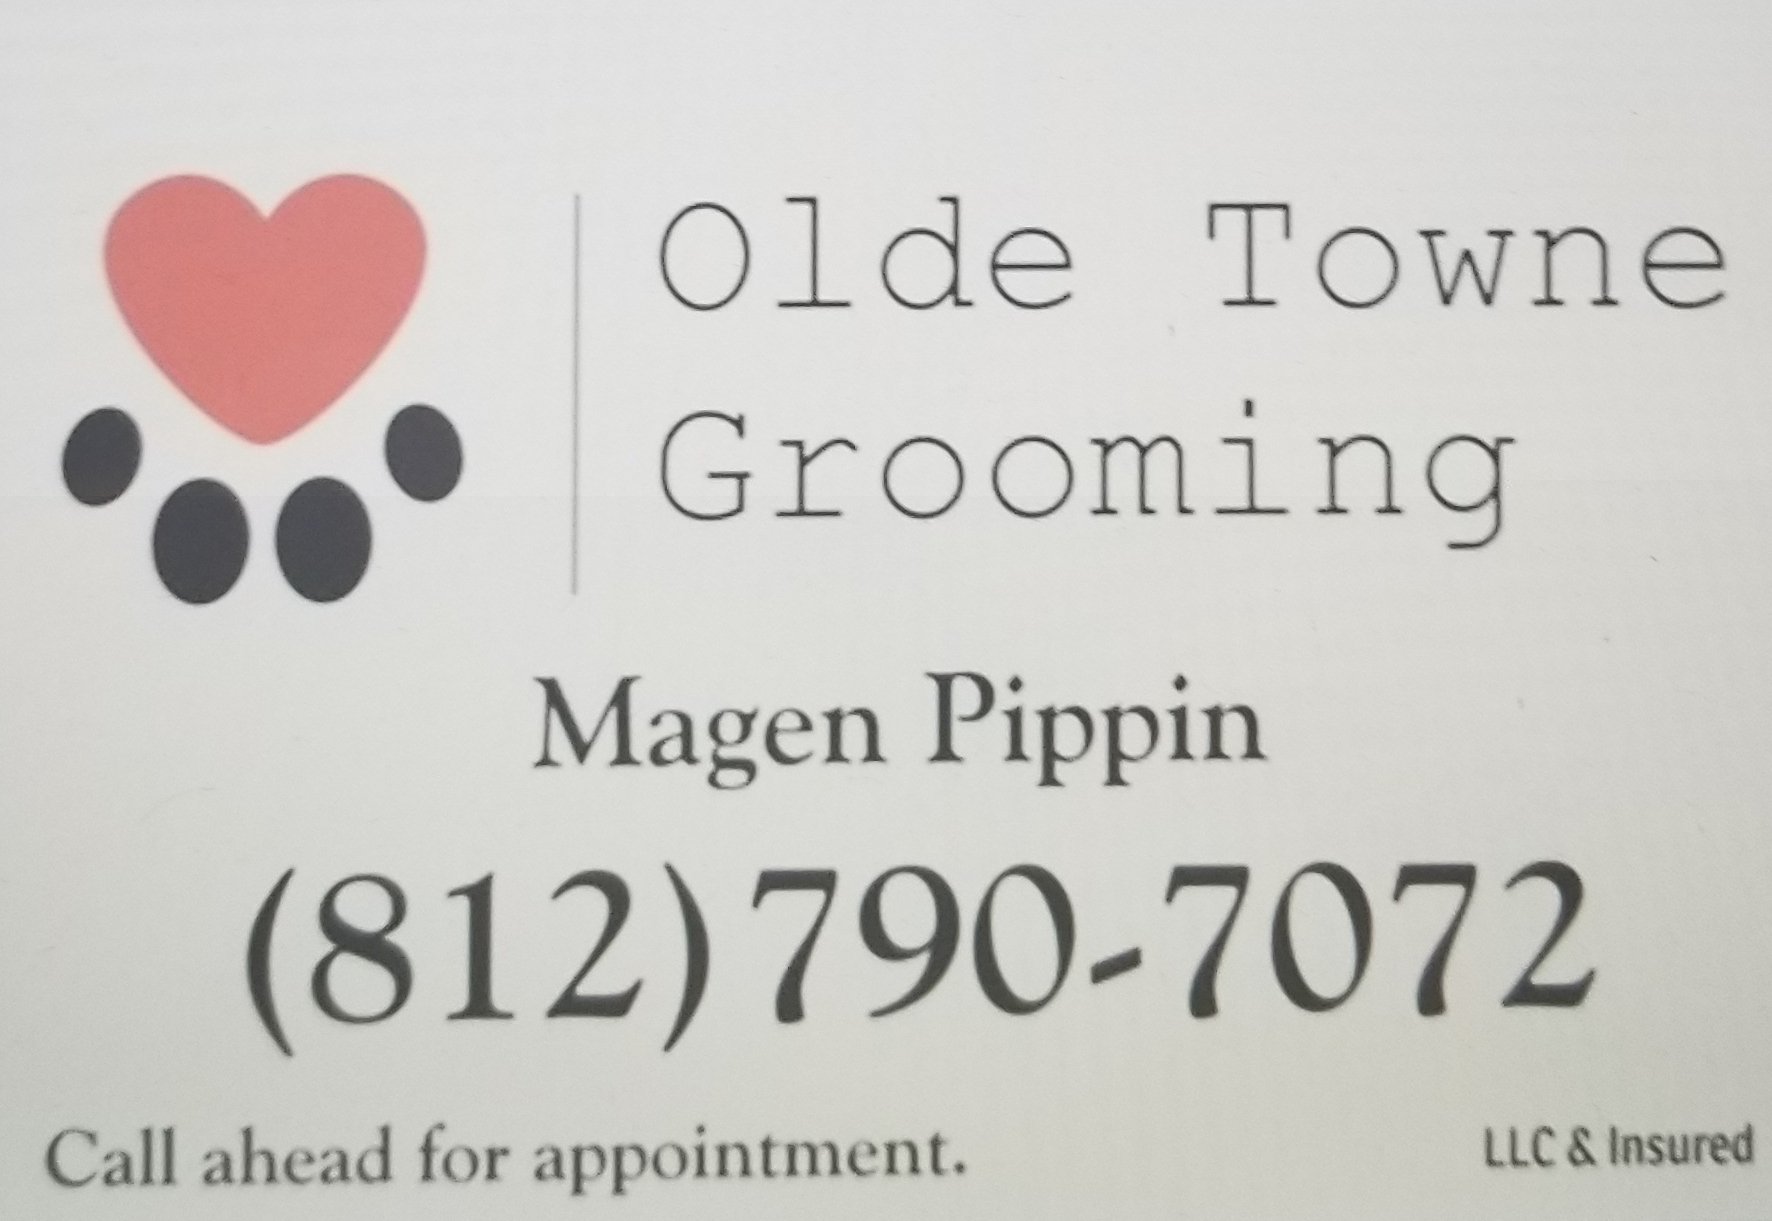 Olde Towne Grooming